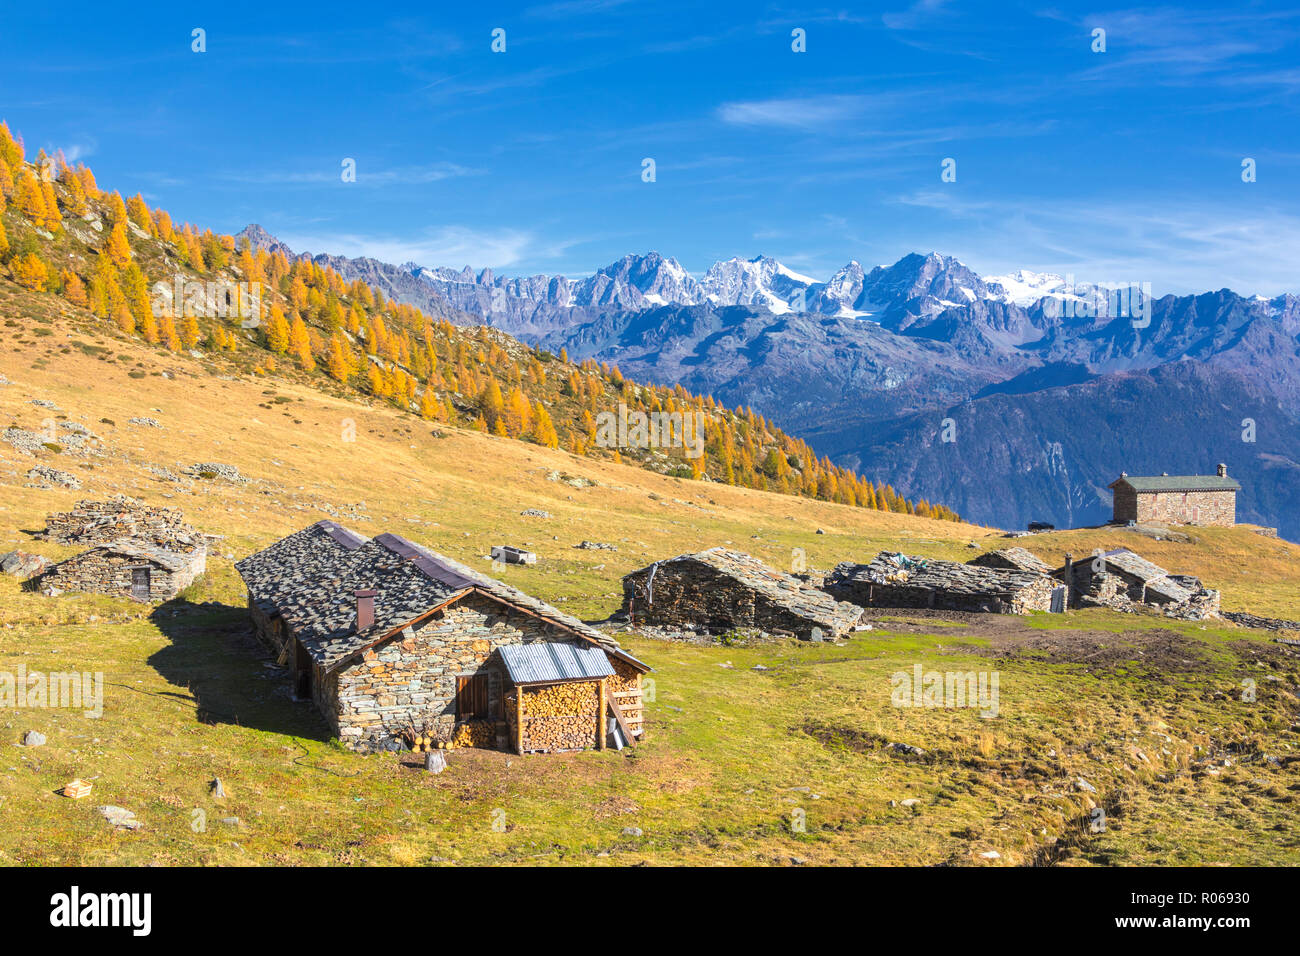 Capanne in pietra e coloratissimi boschi in autunno con il gruppo del Bernina sullo sfondo, Alpe Arcoglio Valmalenco, Valtellina, Lombardia, Italia, Europa Foto Stock